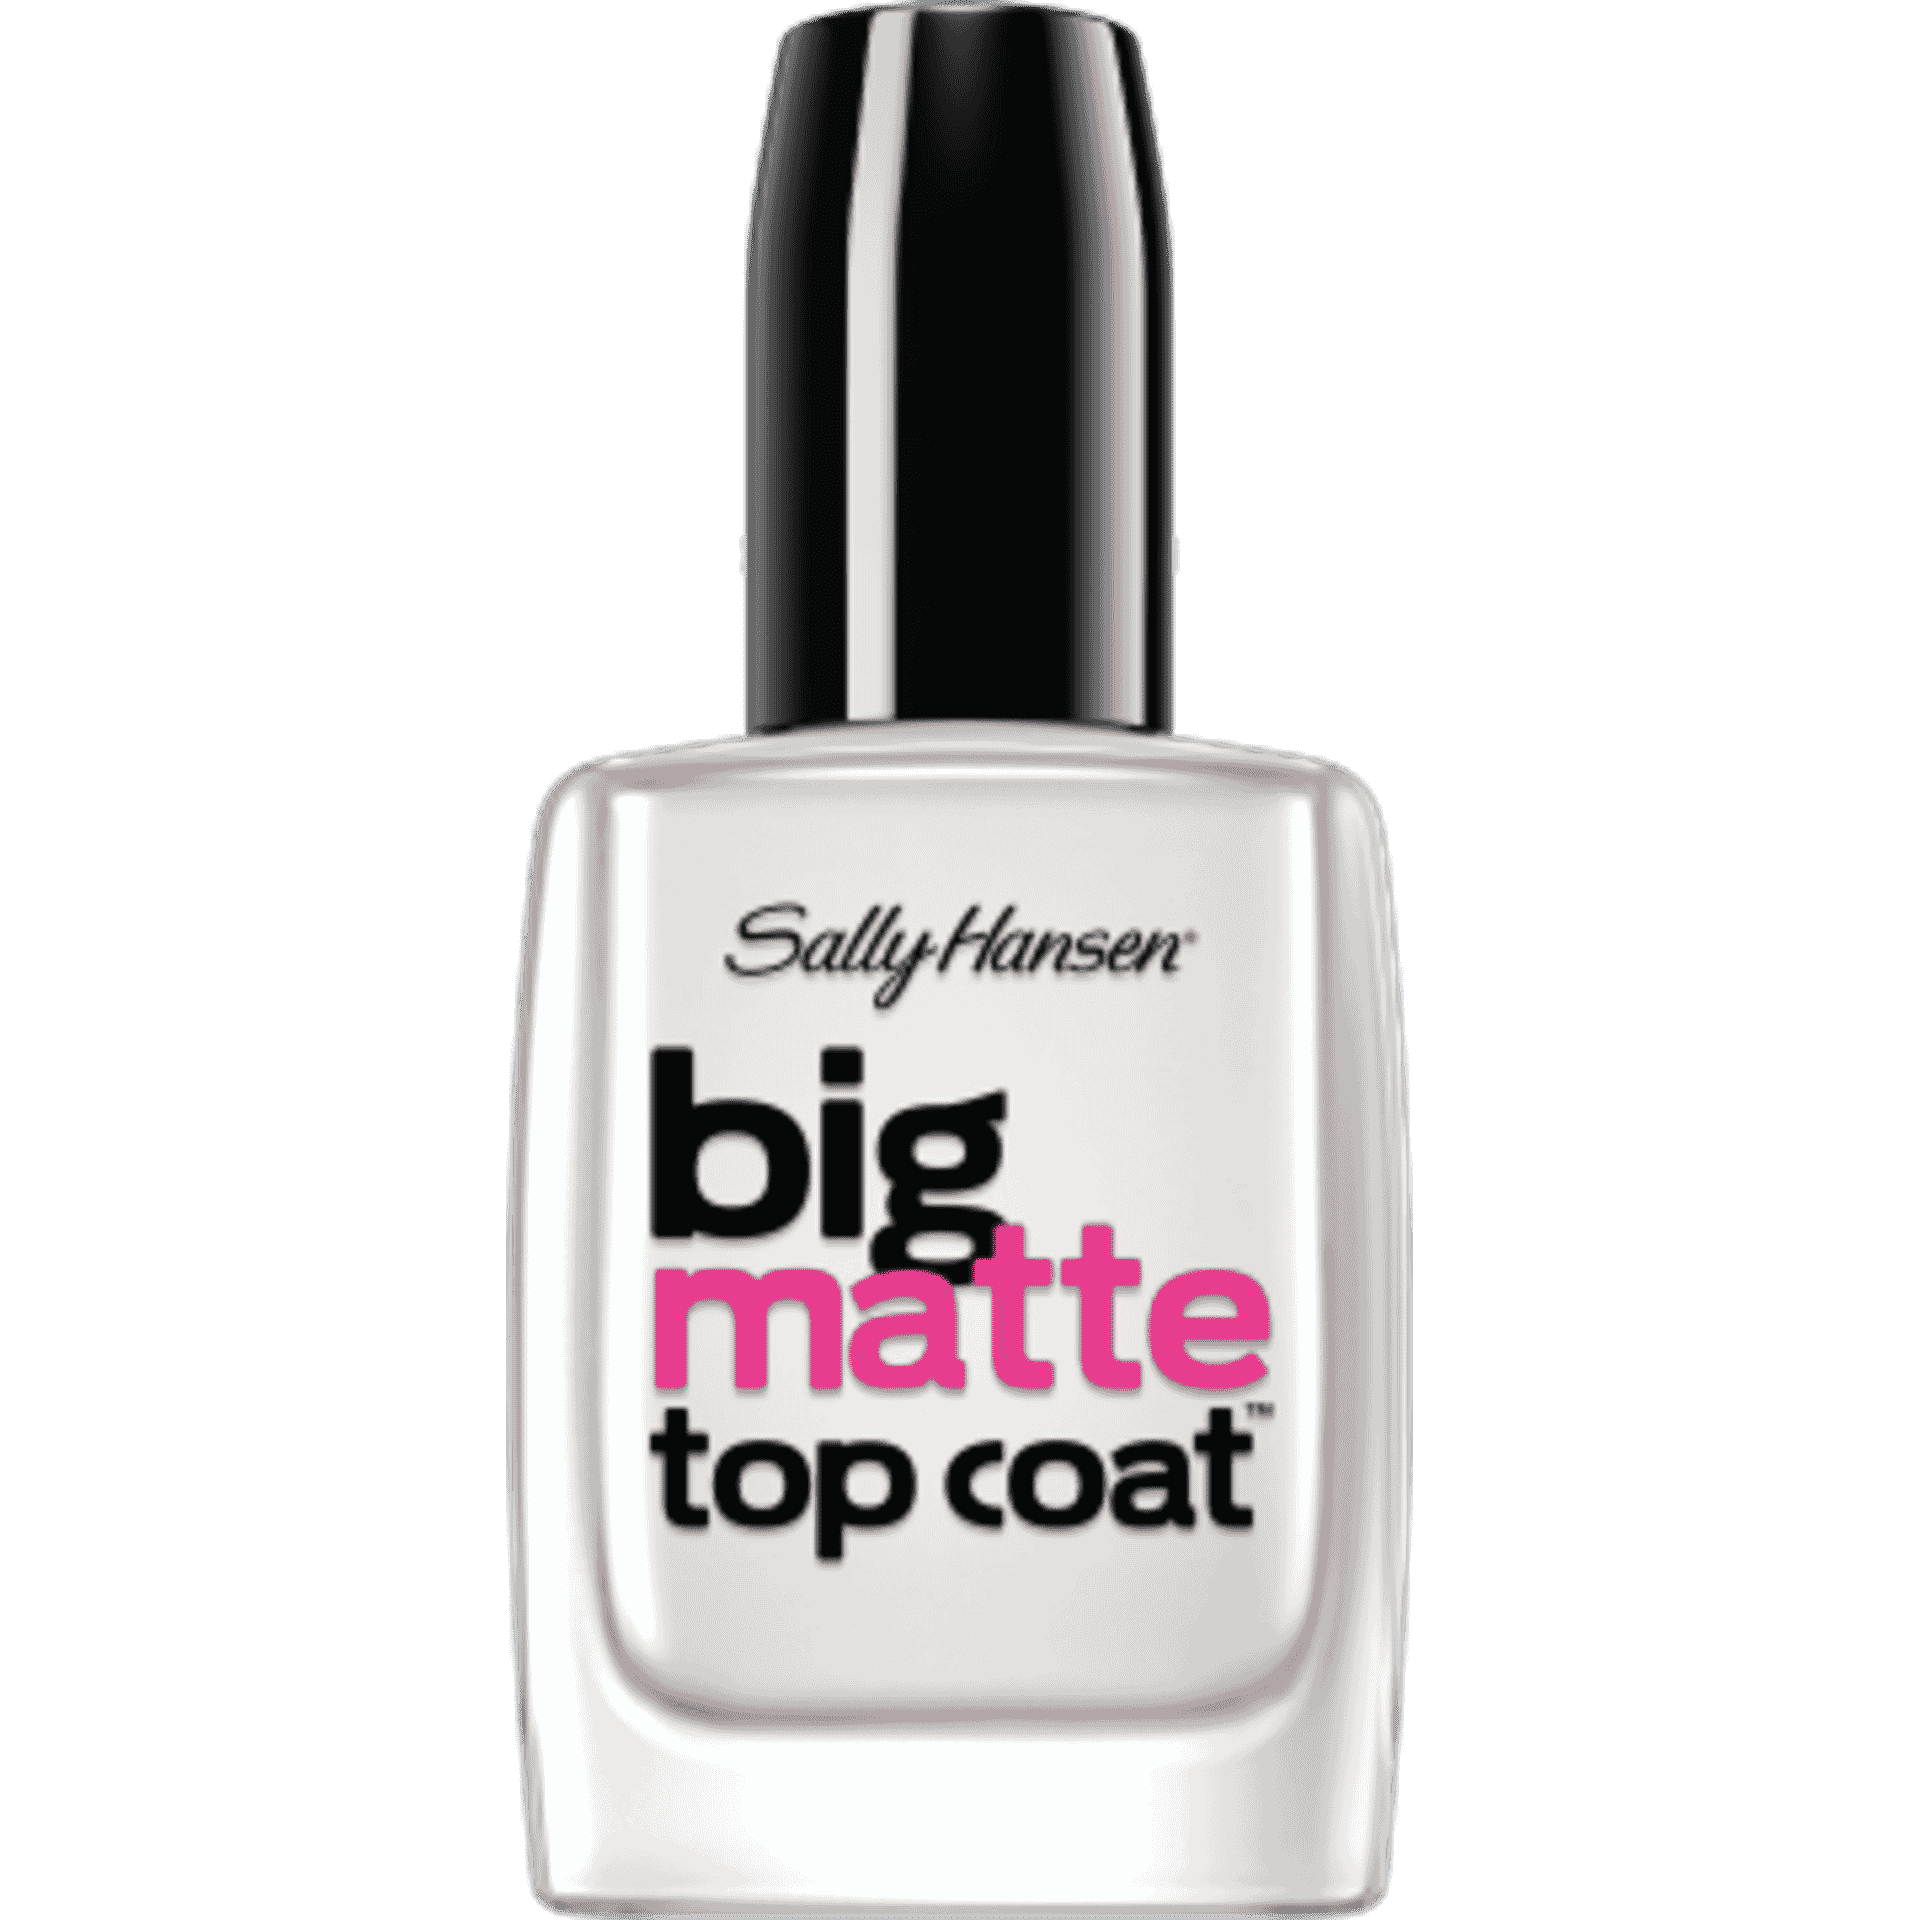 Sally Hansen Big Matte Top Coat